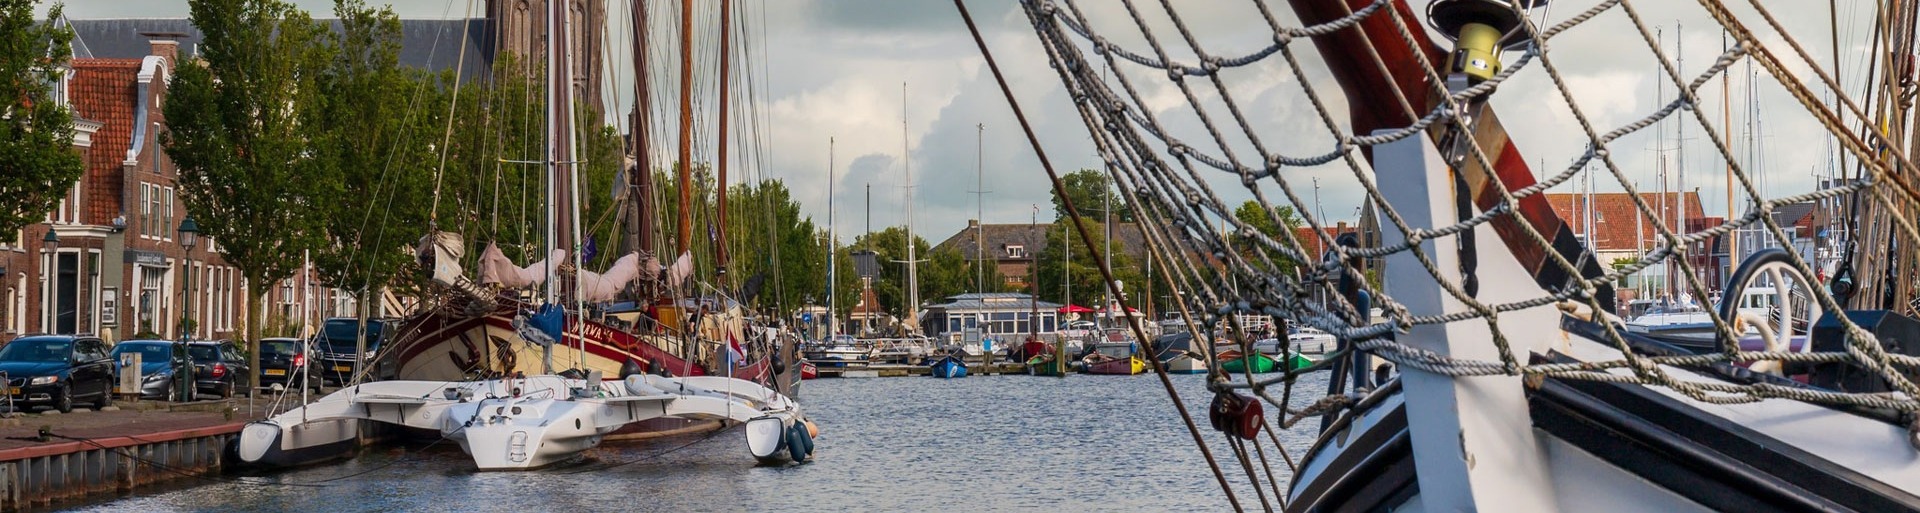 De haven van Harlingen met boten die in het water liggen